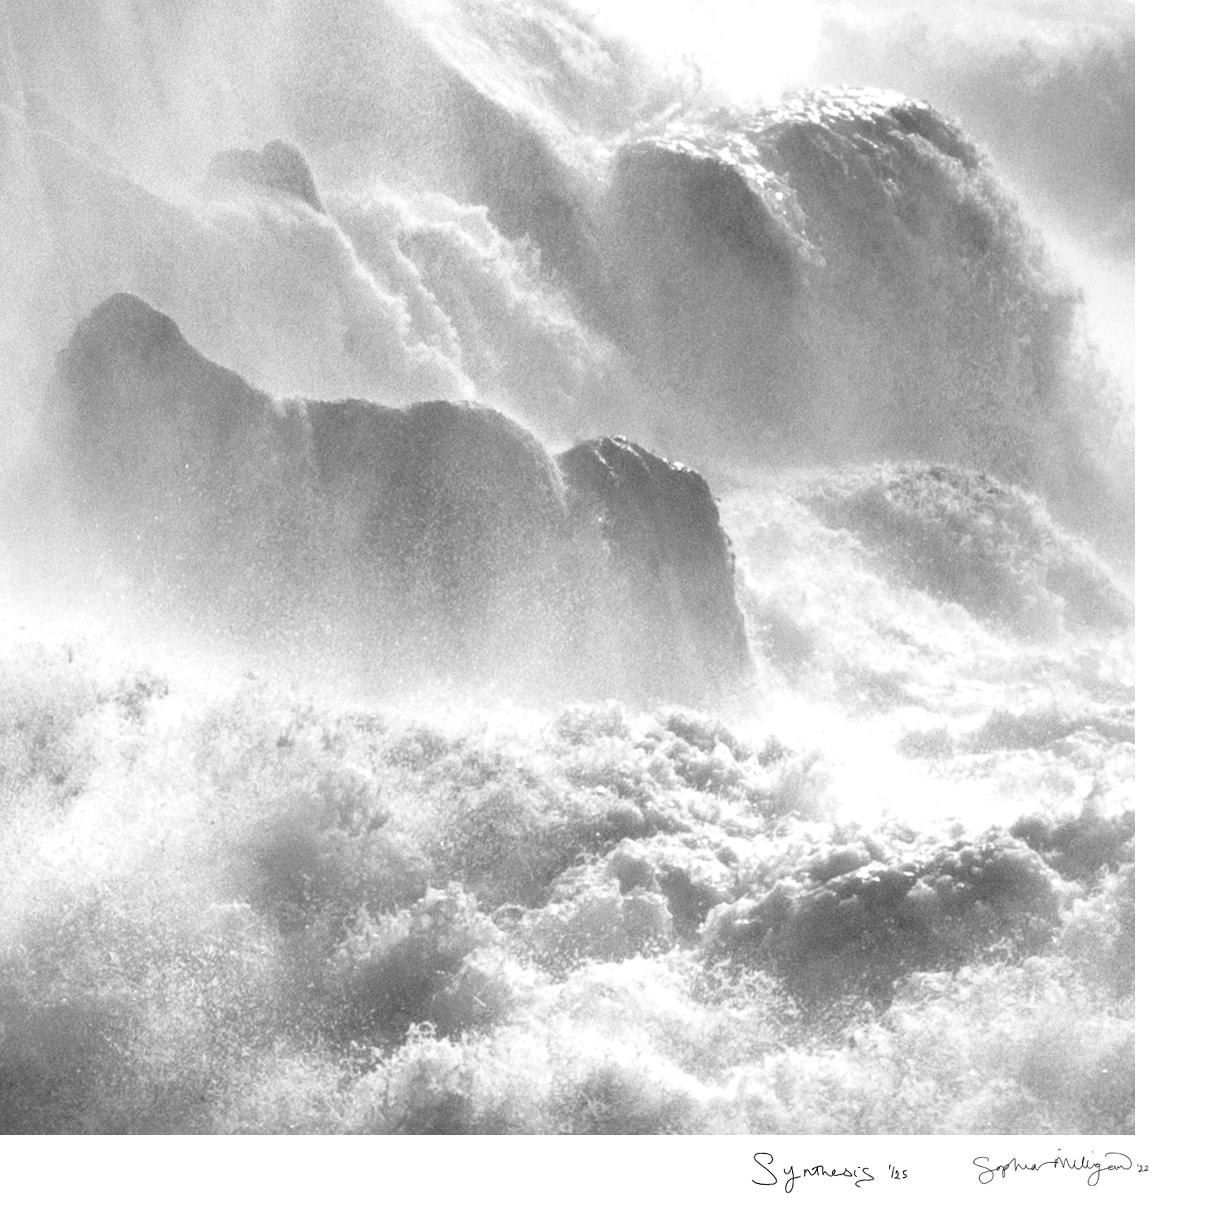 'Synthese' 
Limitierte Auflage einer Schwarz-Weiß-Archivfotografie. Ungerahmt
_________________
Der wilde Atlantik explodiert in einer ungezügelten Energiefreisetzung und lässt die Grenzen zwischen Meer, Himmel und Land verschwimmen. Wasser, Erde